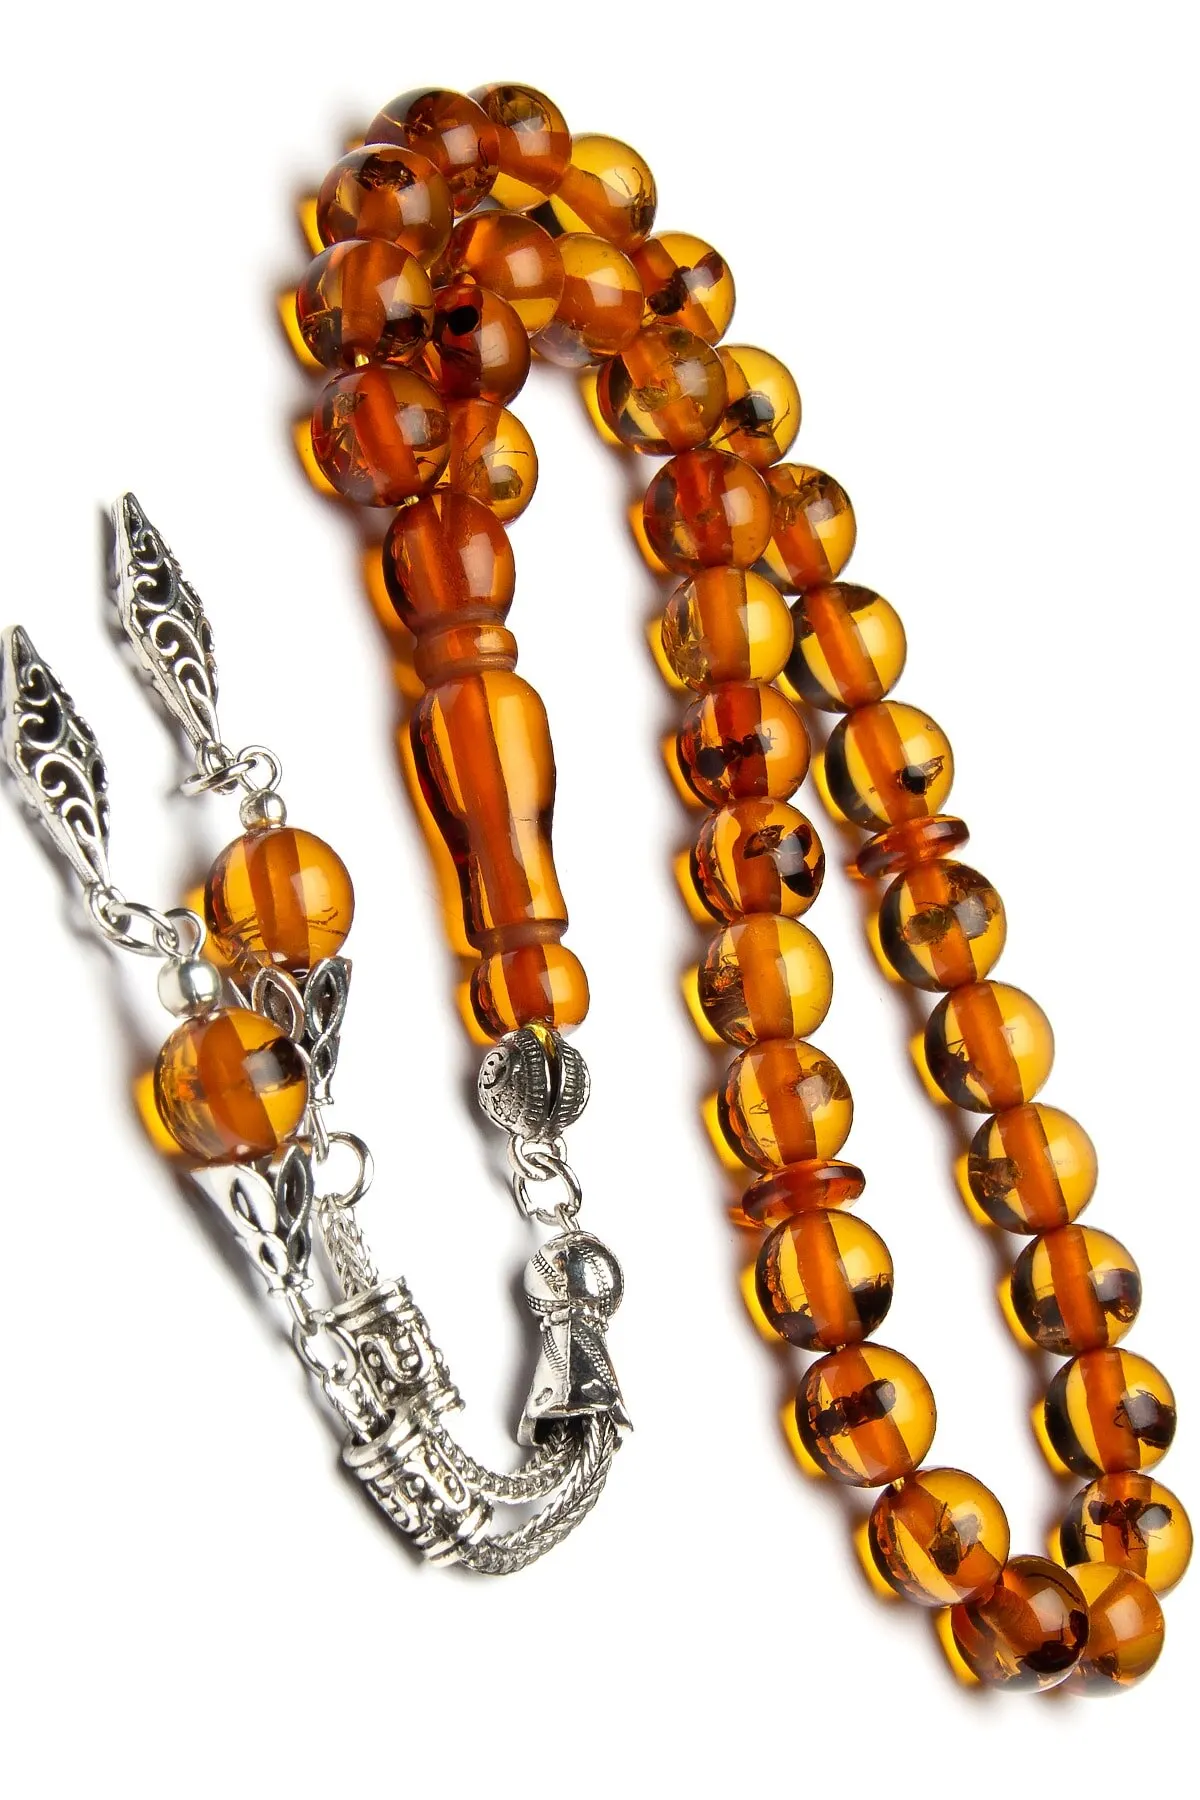 

Islamic Tasbih Muslim Rosary Beads 33 Prayer Rosary For Men Bracelet For Men Accessory amber oltu amber stone Handmade Turkey